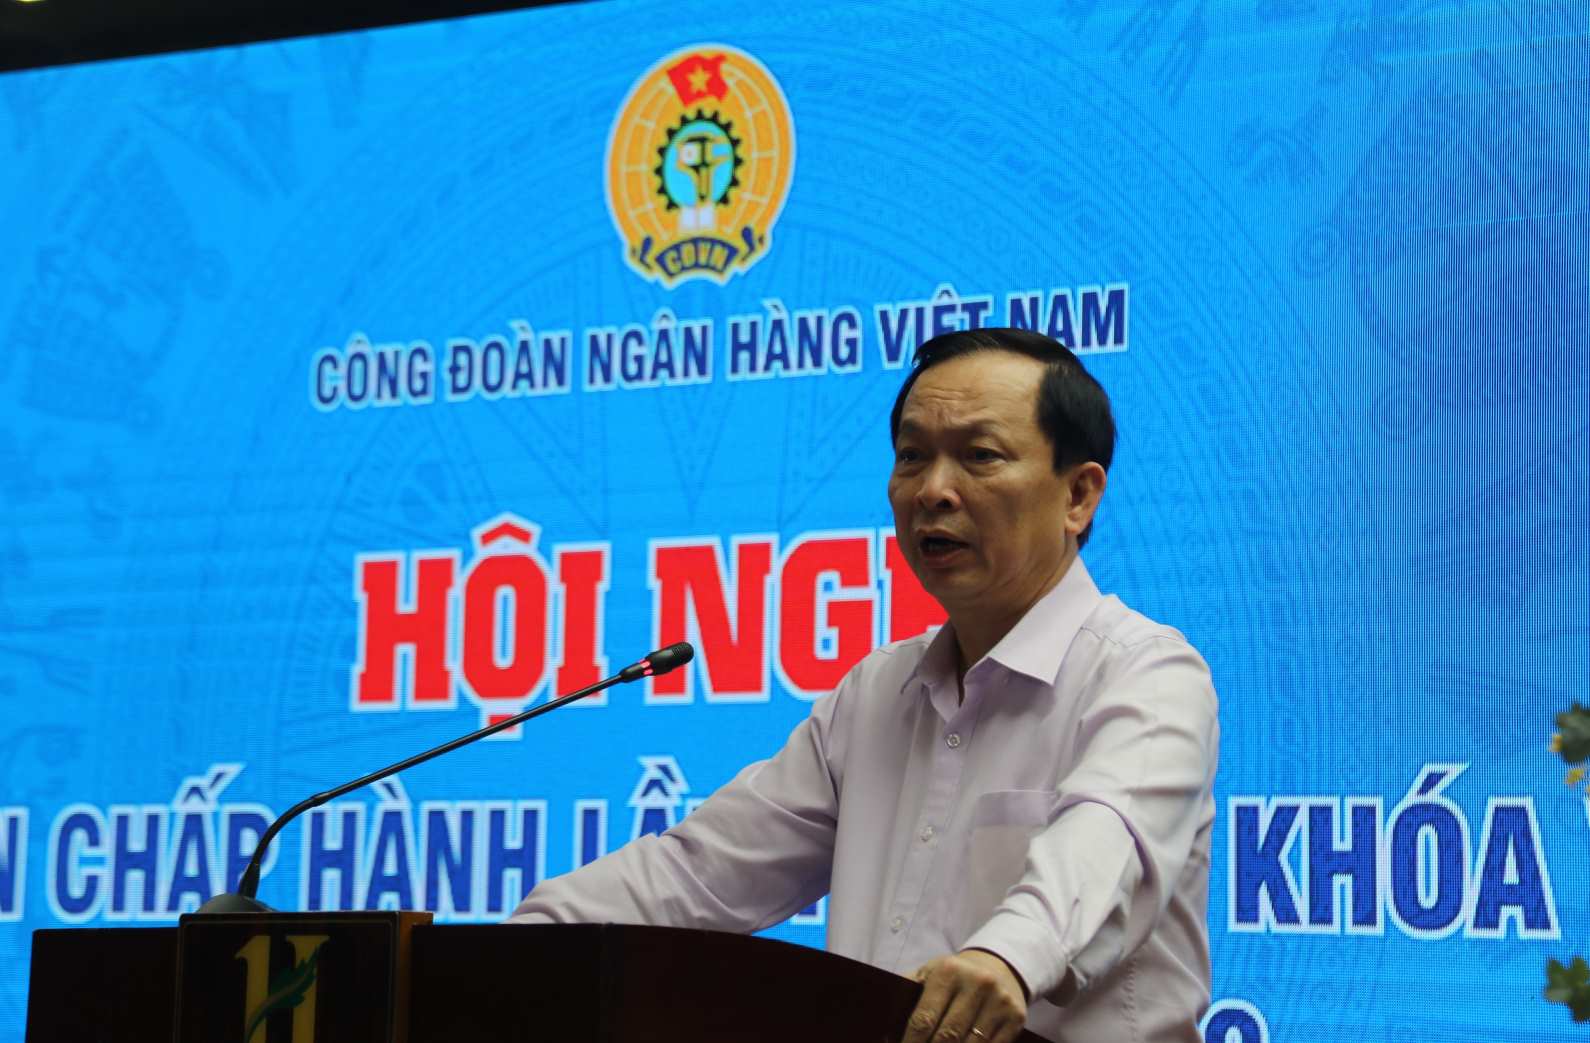 Ông Đào Minh Tú - Phó Thống đốc thường trực Ngân hàng Nhà nước, Chủ tịch Công đoàn Ngân hàng Việt Nam phát biểu khai mạc. Ảnh: Phương Linh